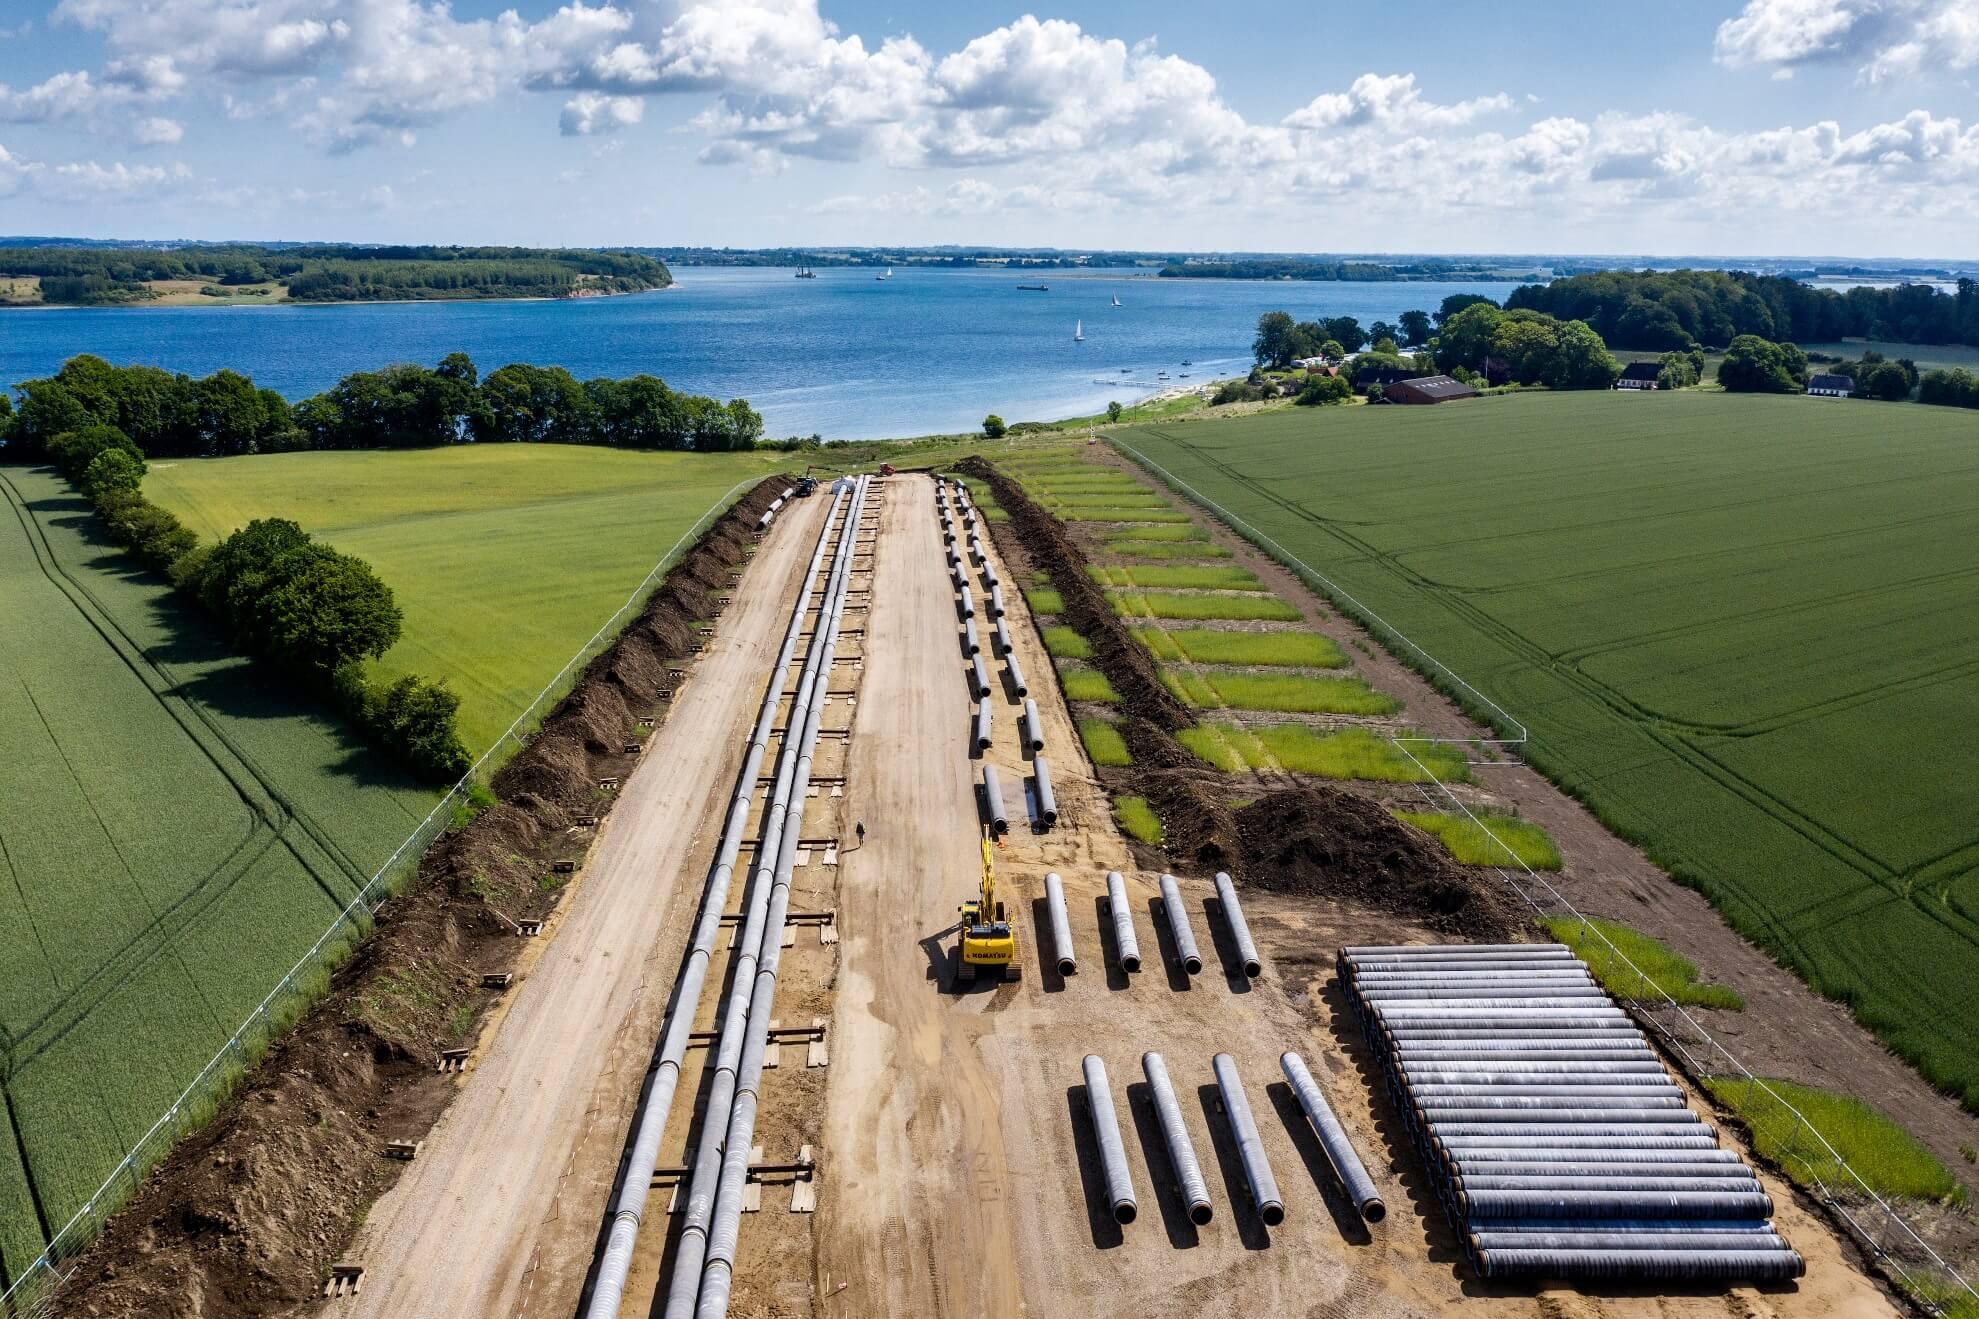 Energinet og polske Gaz-System bygger sammen gasrørledningen Baltic Pipe, som forbinder de norske, danske og polske gassystemer og skal udbygges til Lolland-Falster. Her svejses gasrør sammen vest for Lillebælt.